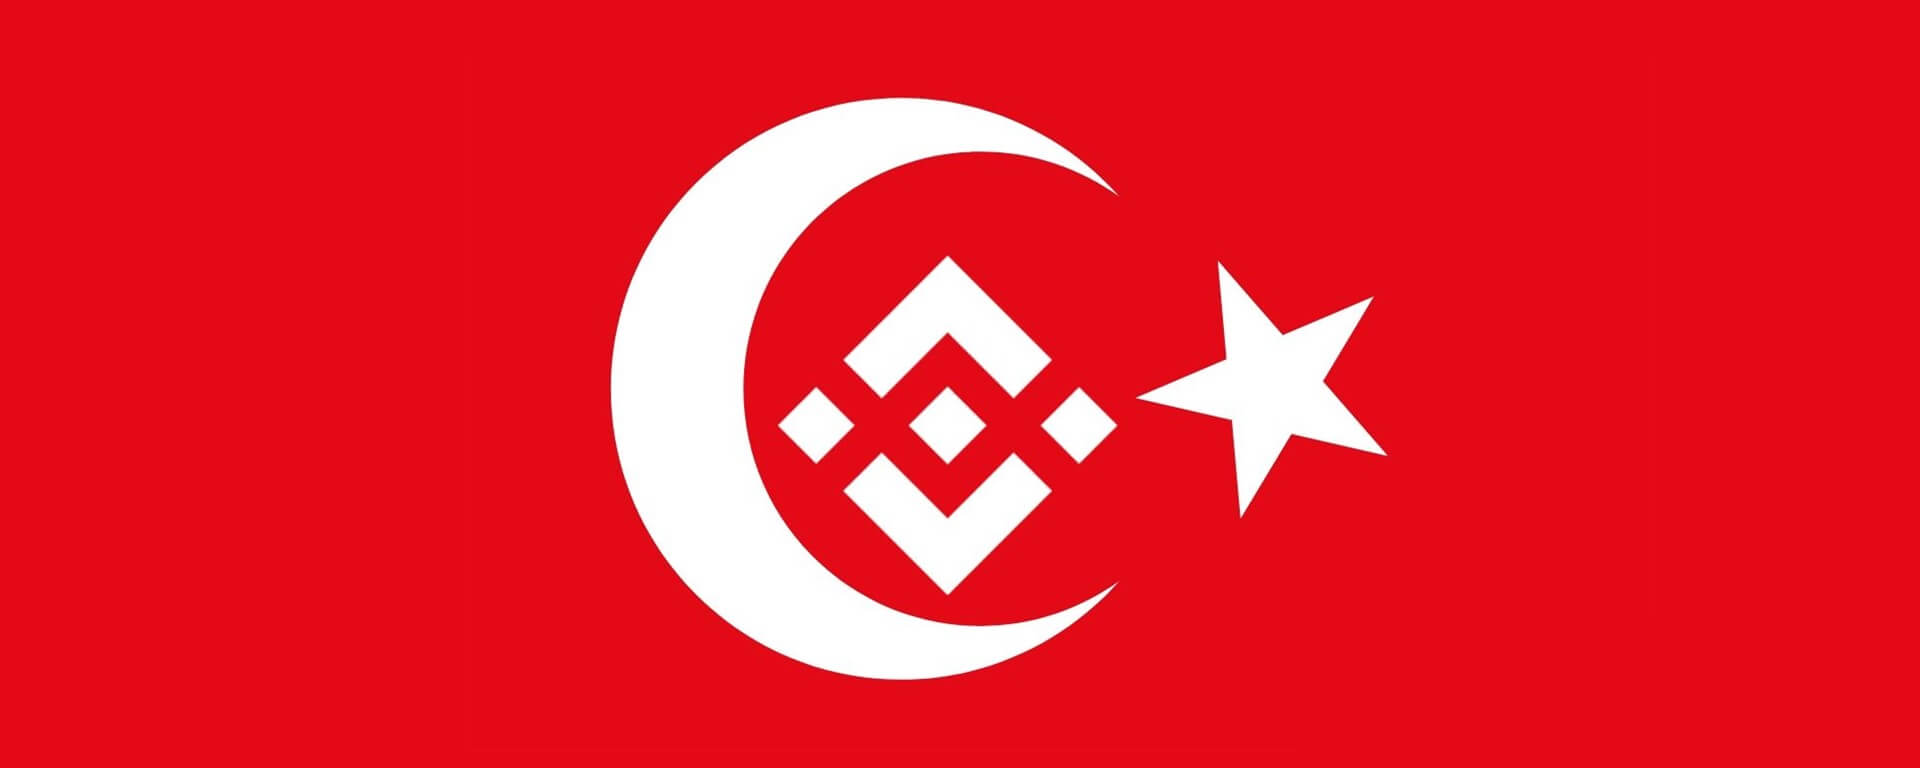 Maior mercado cripto do Oriente Médio a Turquia recebe apoio após grande terremoto